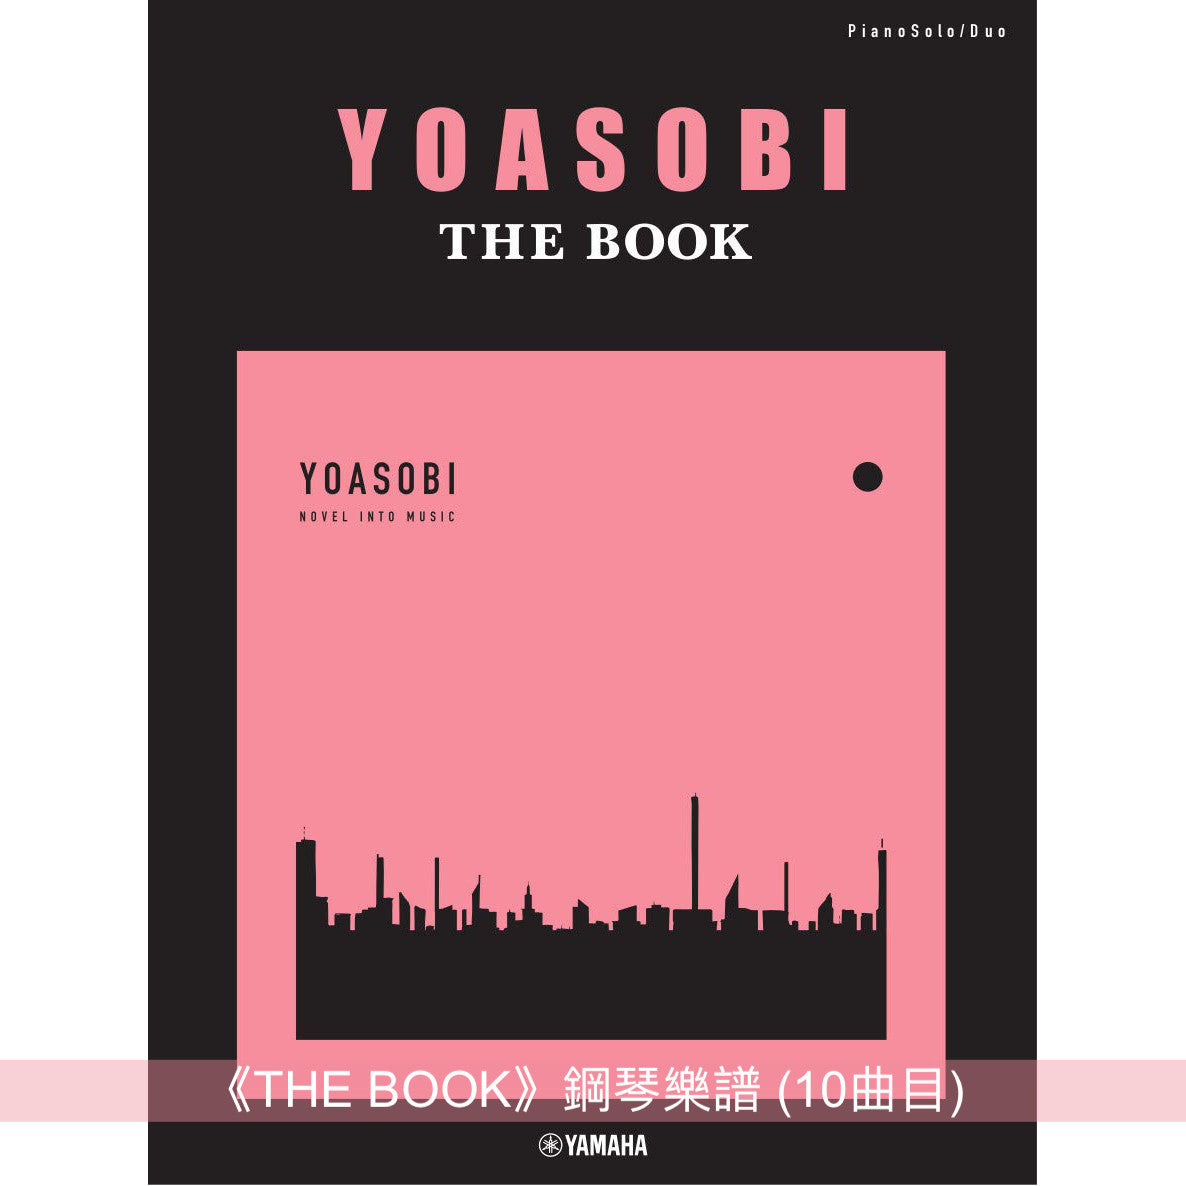 YOASOBI 鋼琴／樂團樂譜《THE BOOK》、《THE BOOK II》、《THE BOOK III》